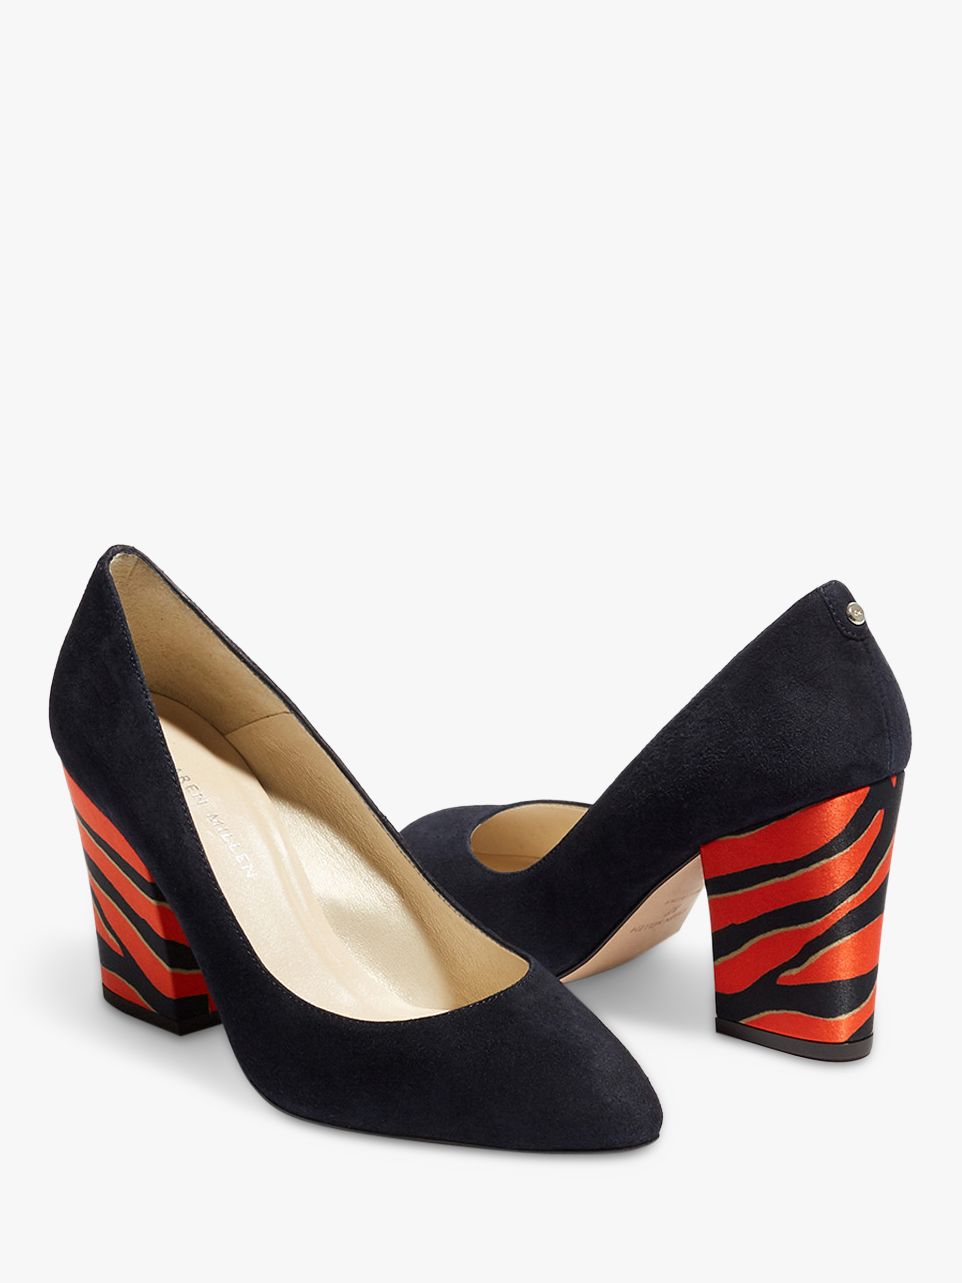 Karen Millen Contrast Block Heel Court Shoes